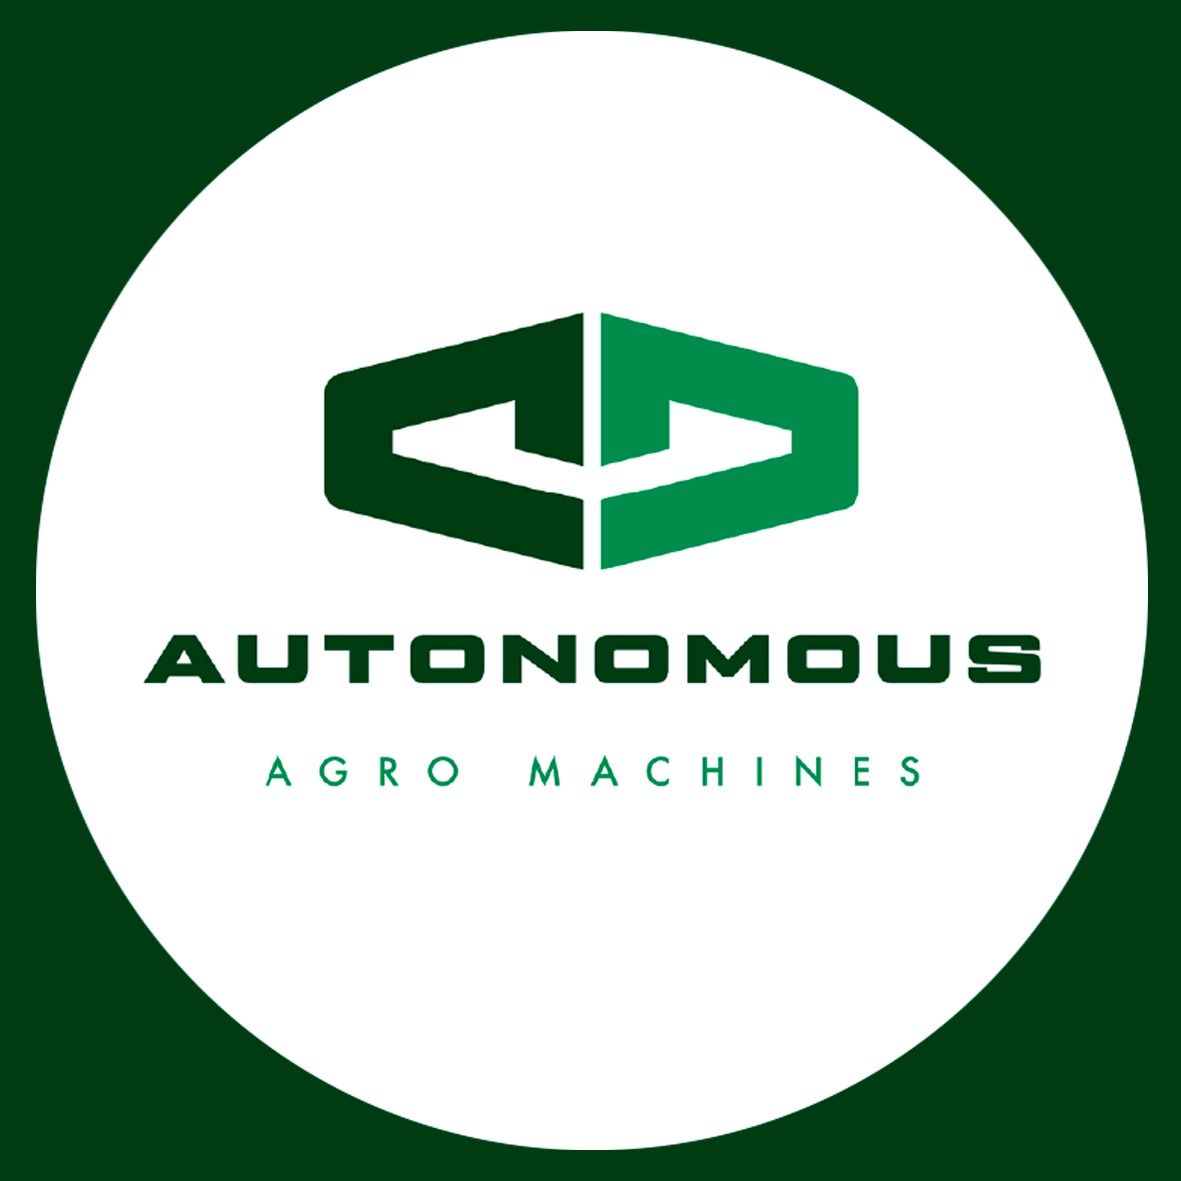 Fundação da Autonomous Agro Machines S/A